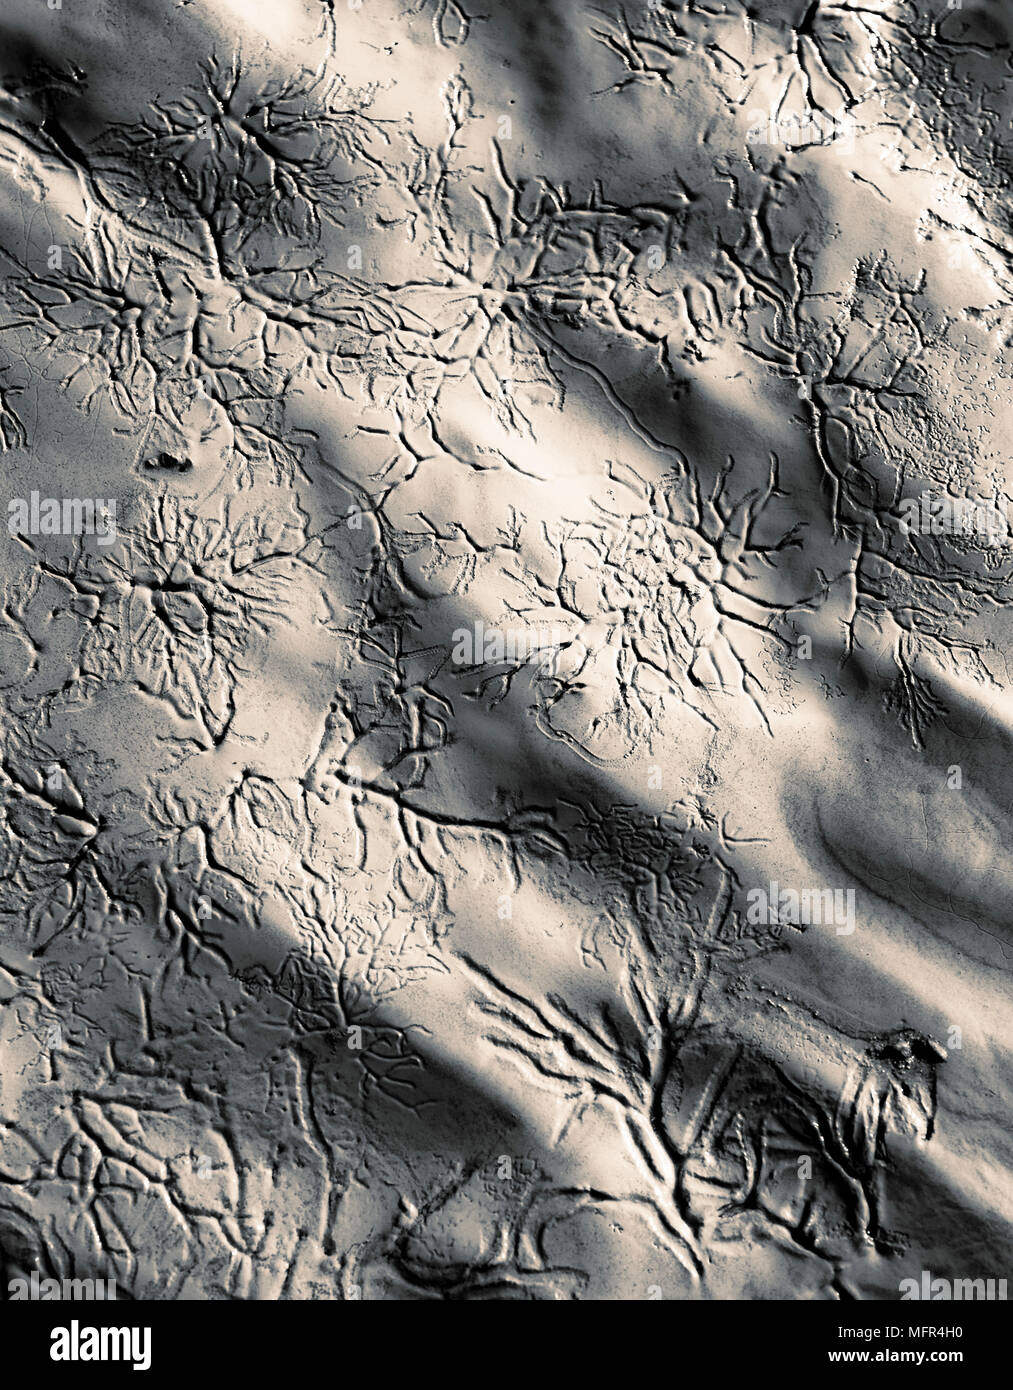 Vene di fango o di dendriti formata dalla marea sfuggente. Foto Stock